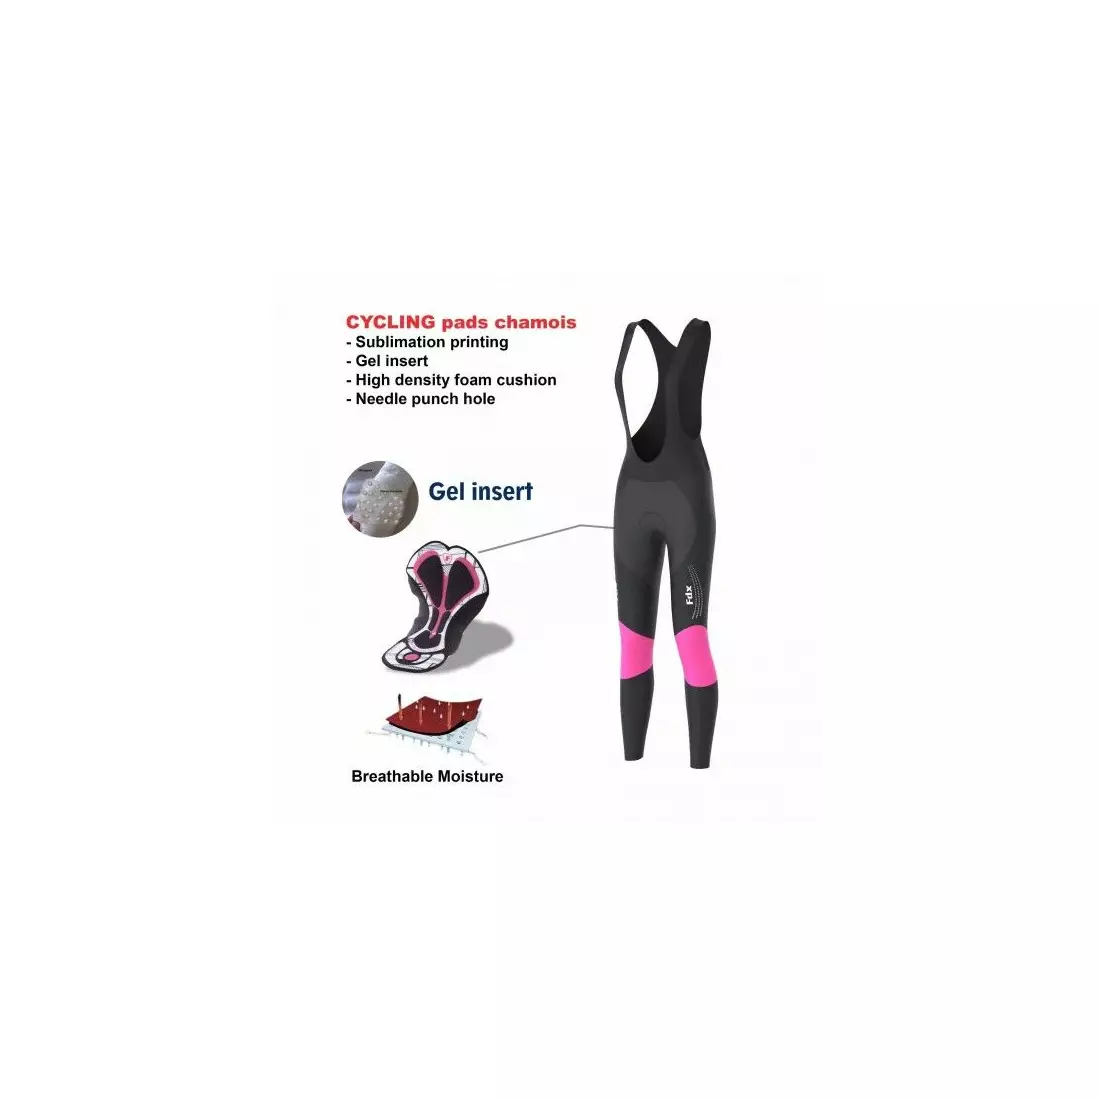 FDX 1460 dámske zateplené cyklistické nohavice, čierne a ružové